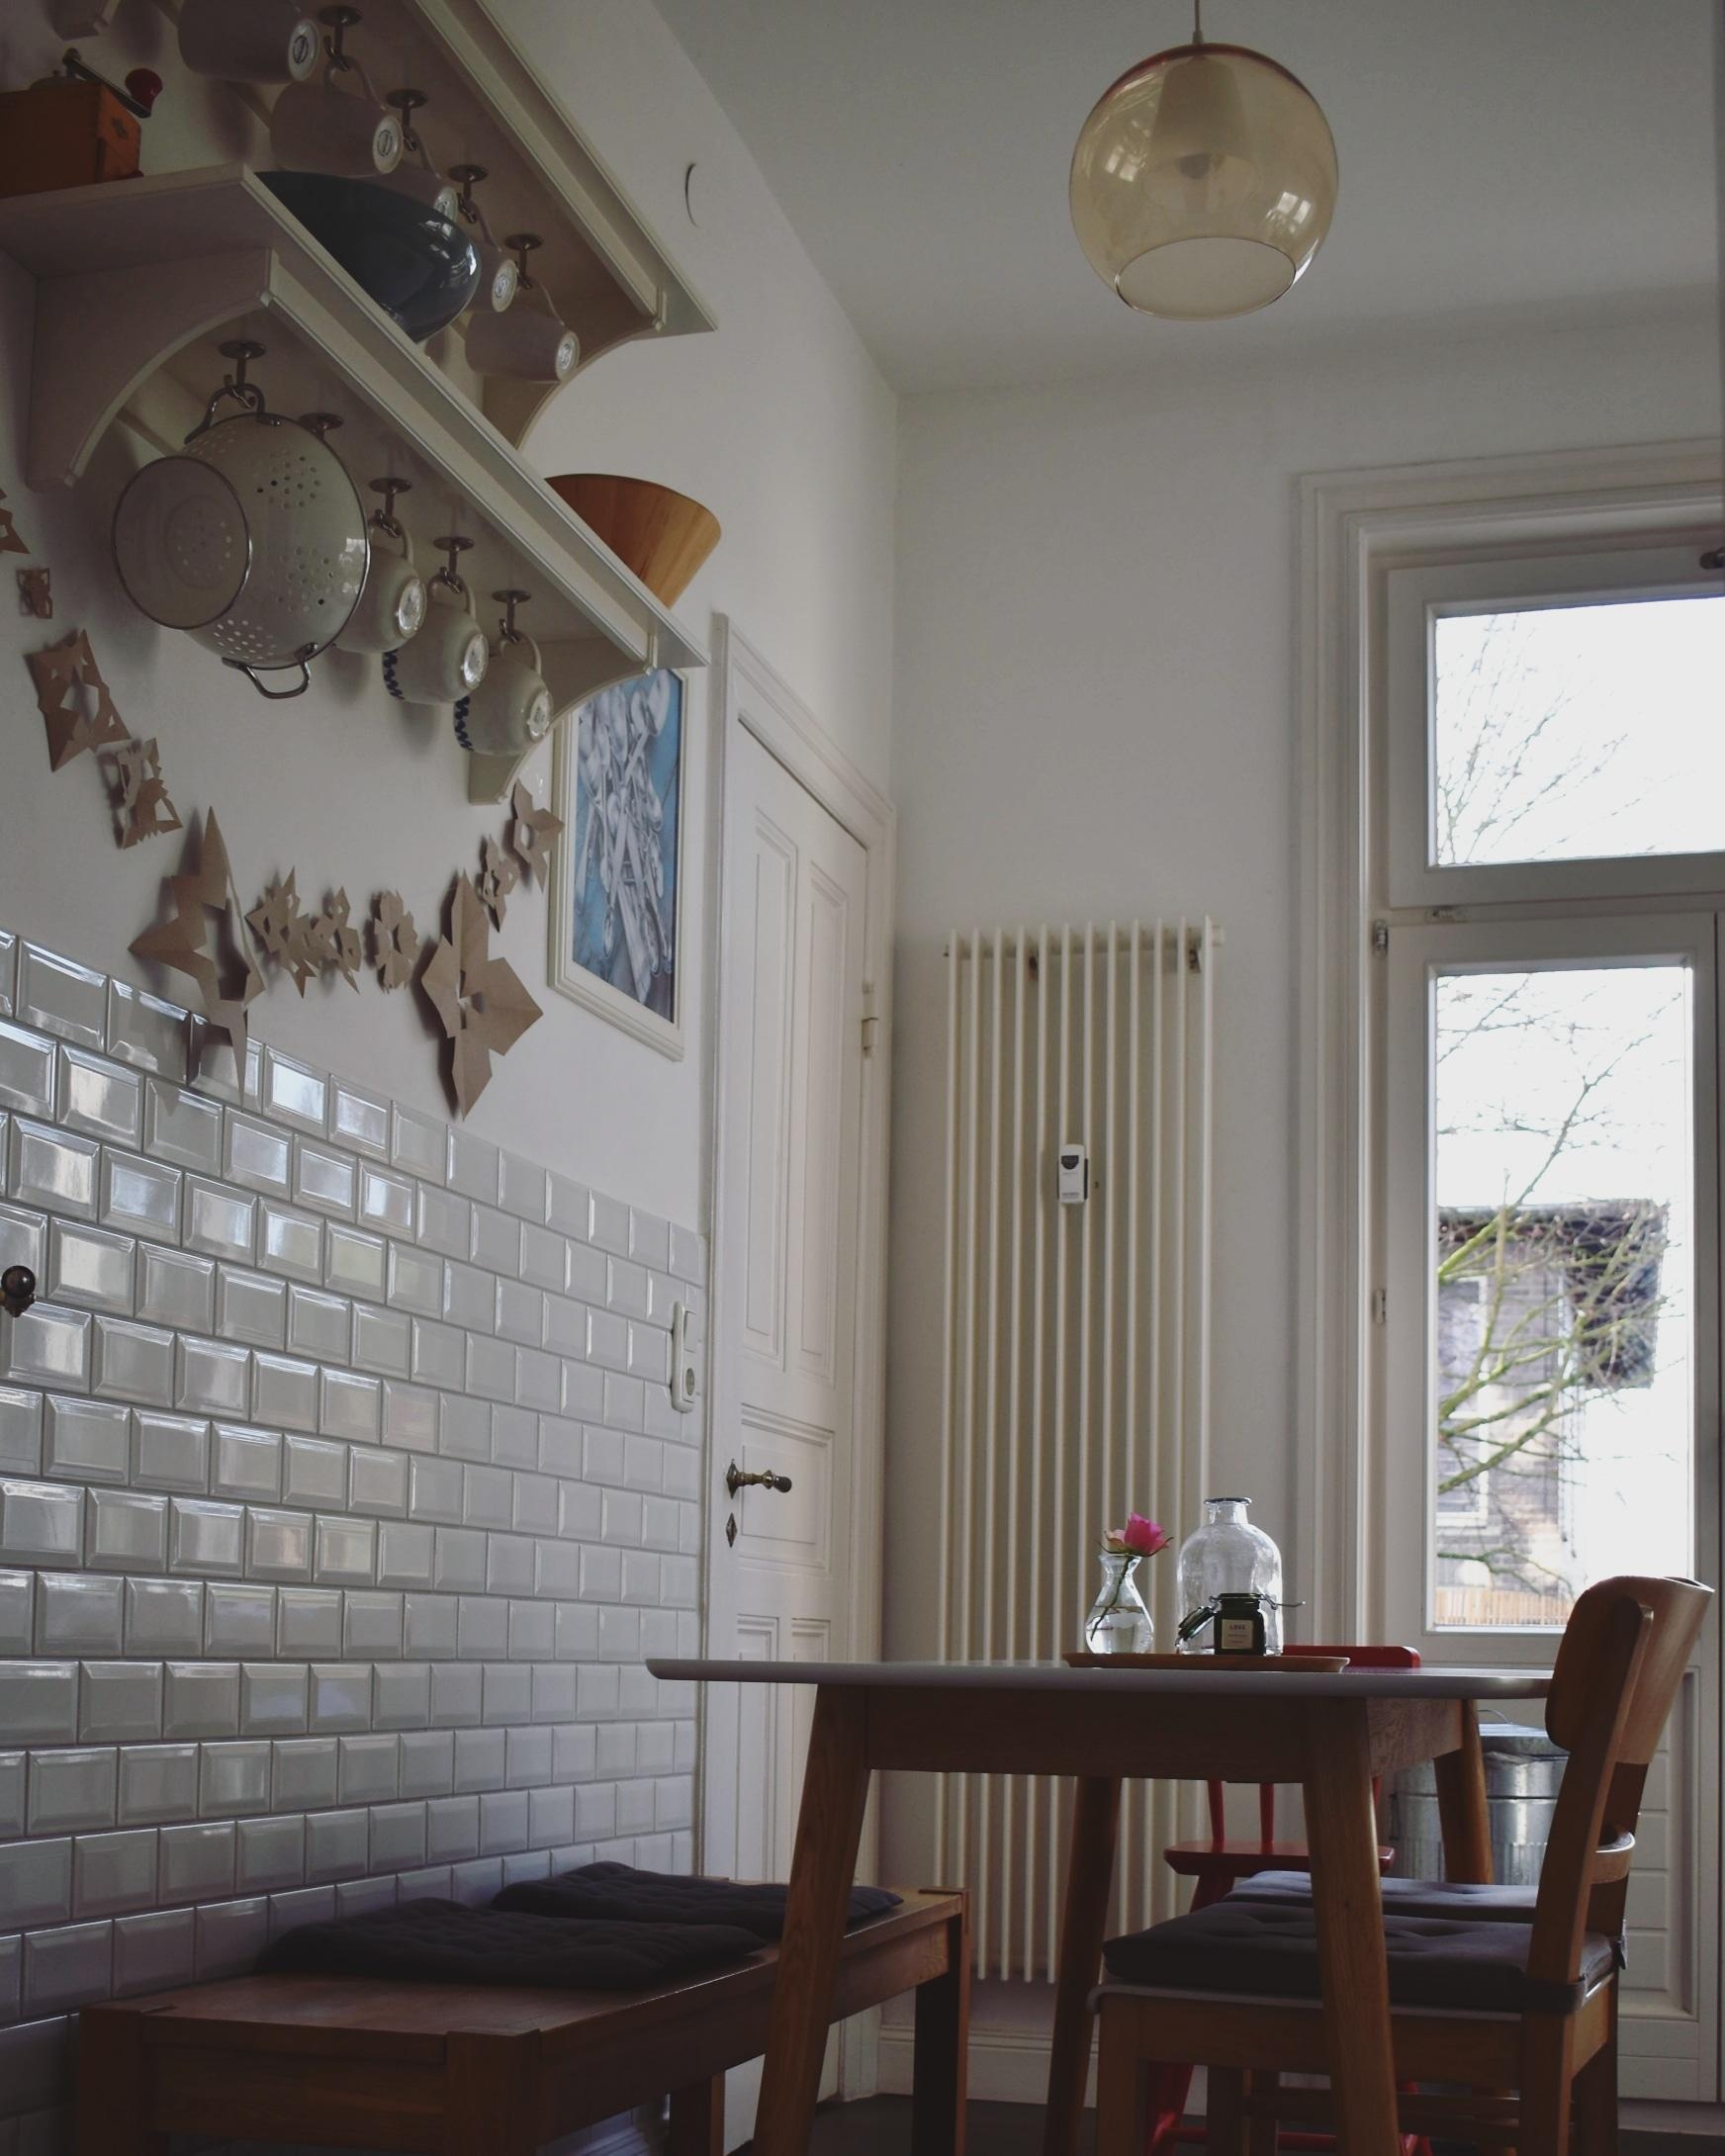 Kücheneinblick
#küche #metrofliesen #esstisch #altbauliebe #altbau 